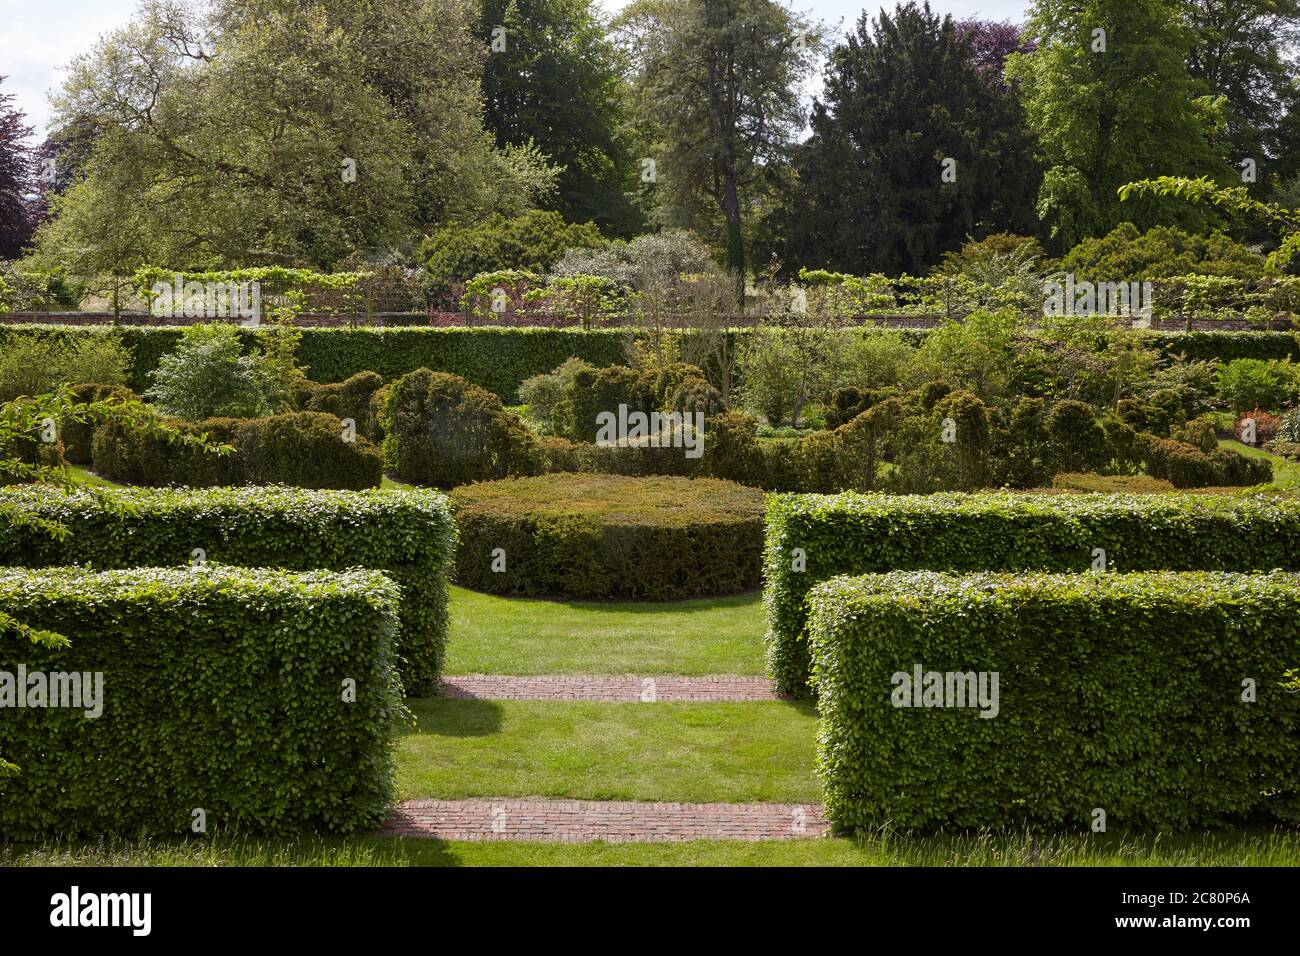 View of the Serpentine Garden at Scampston Hall walled garden designed by the dutch landscape garden architect Piet Oudolf Stock Photo